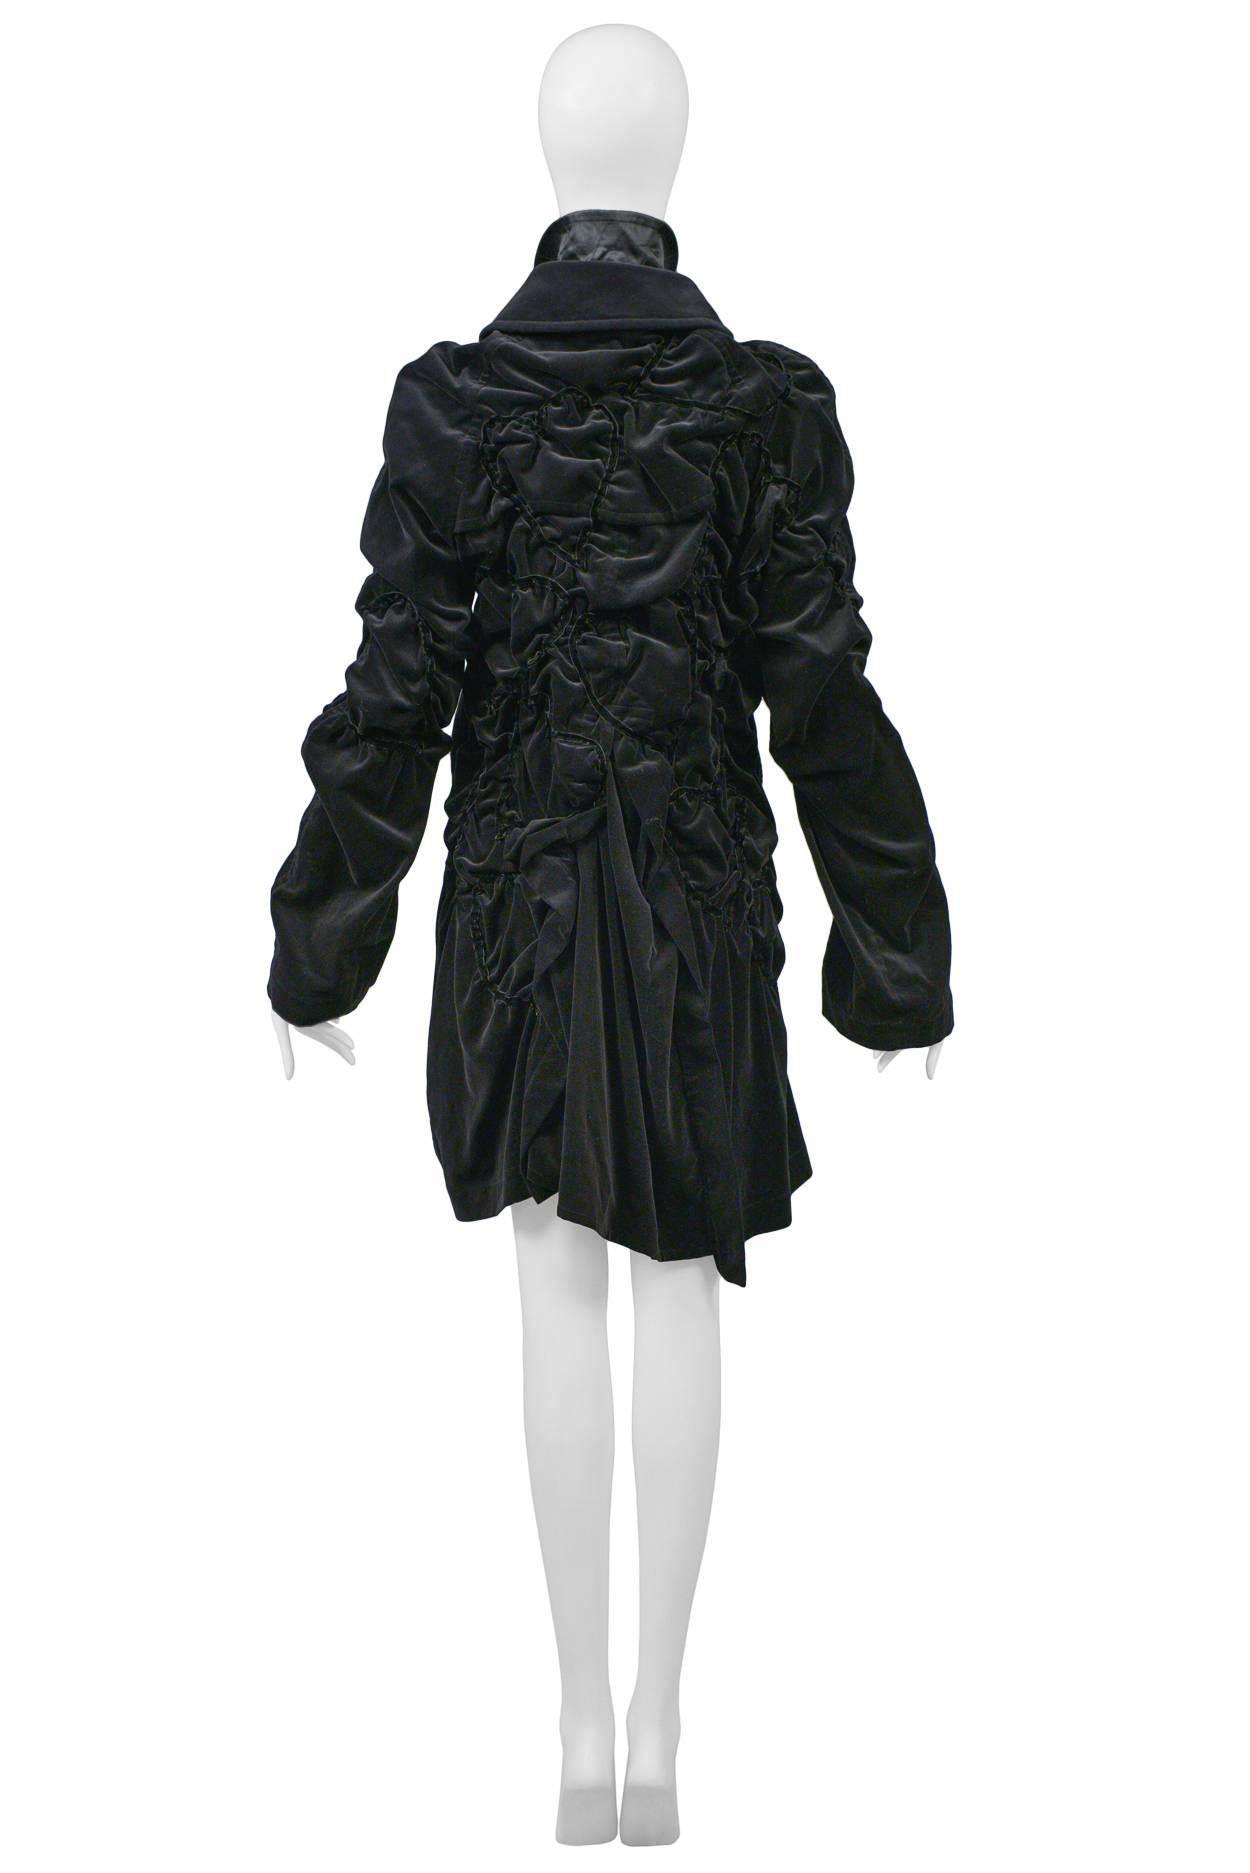 Women's Comme des Garcons Bad Taste Black Velvet Coat 2008 For Sale